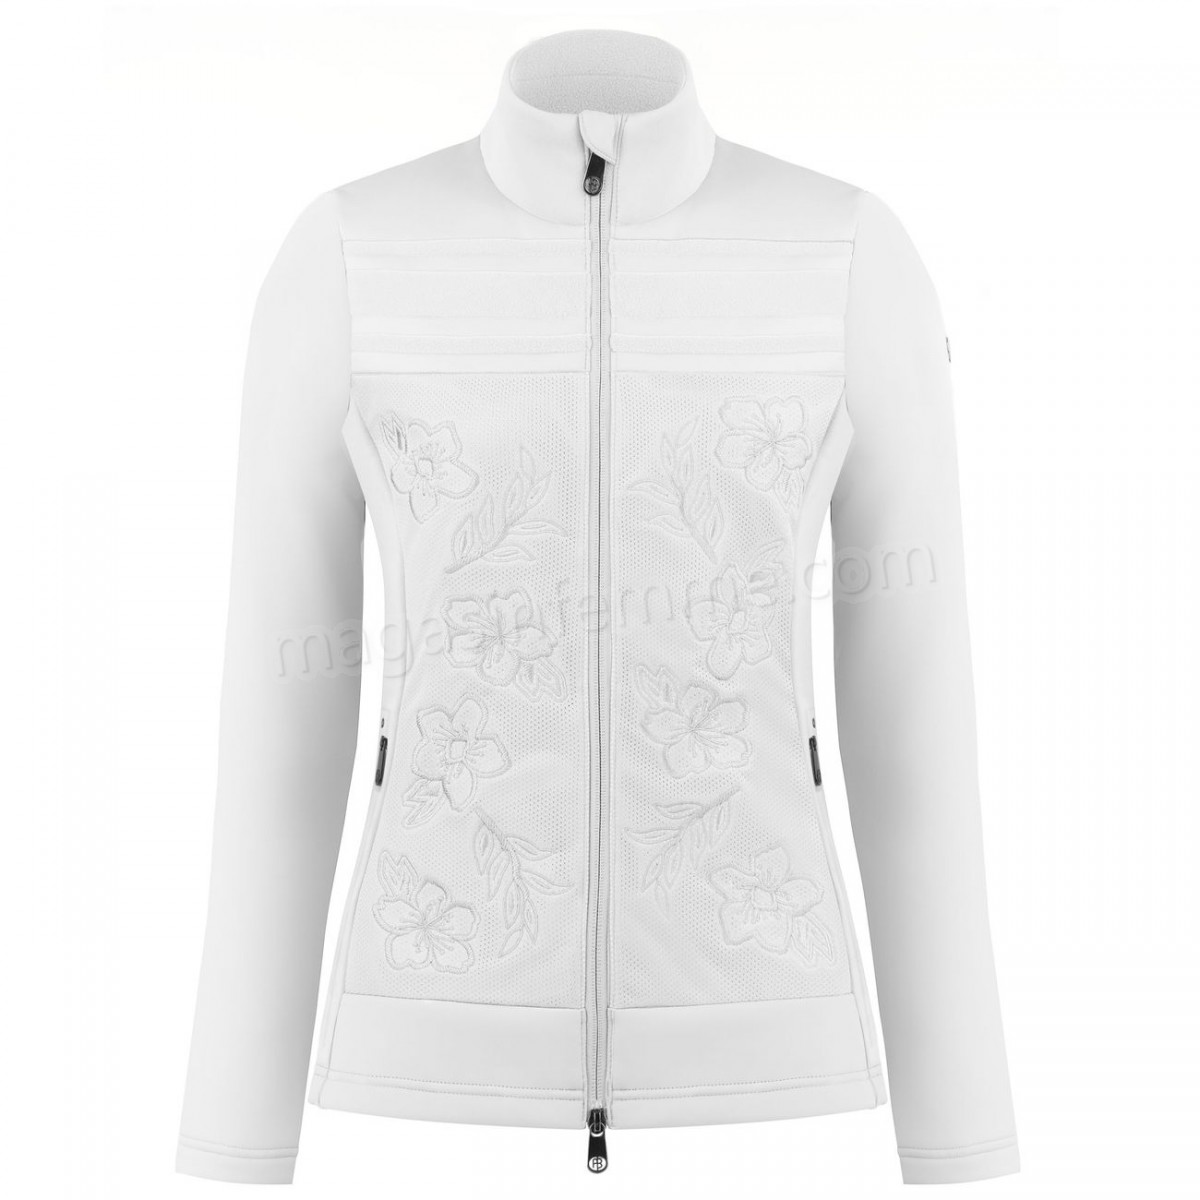 Poivre Blanc-Sports d'hiver femme POIVRE BLANC Veste En Polaire Poivre Blanc Hybrid Stretch Fleece Jacket 1605 White Femme en solde - -0